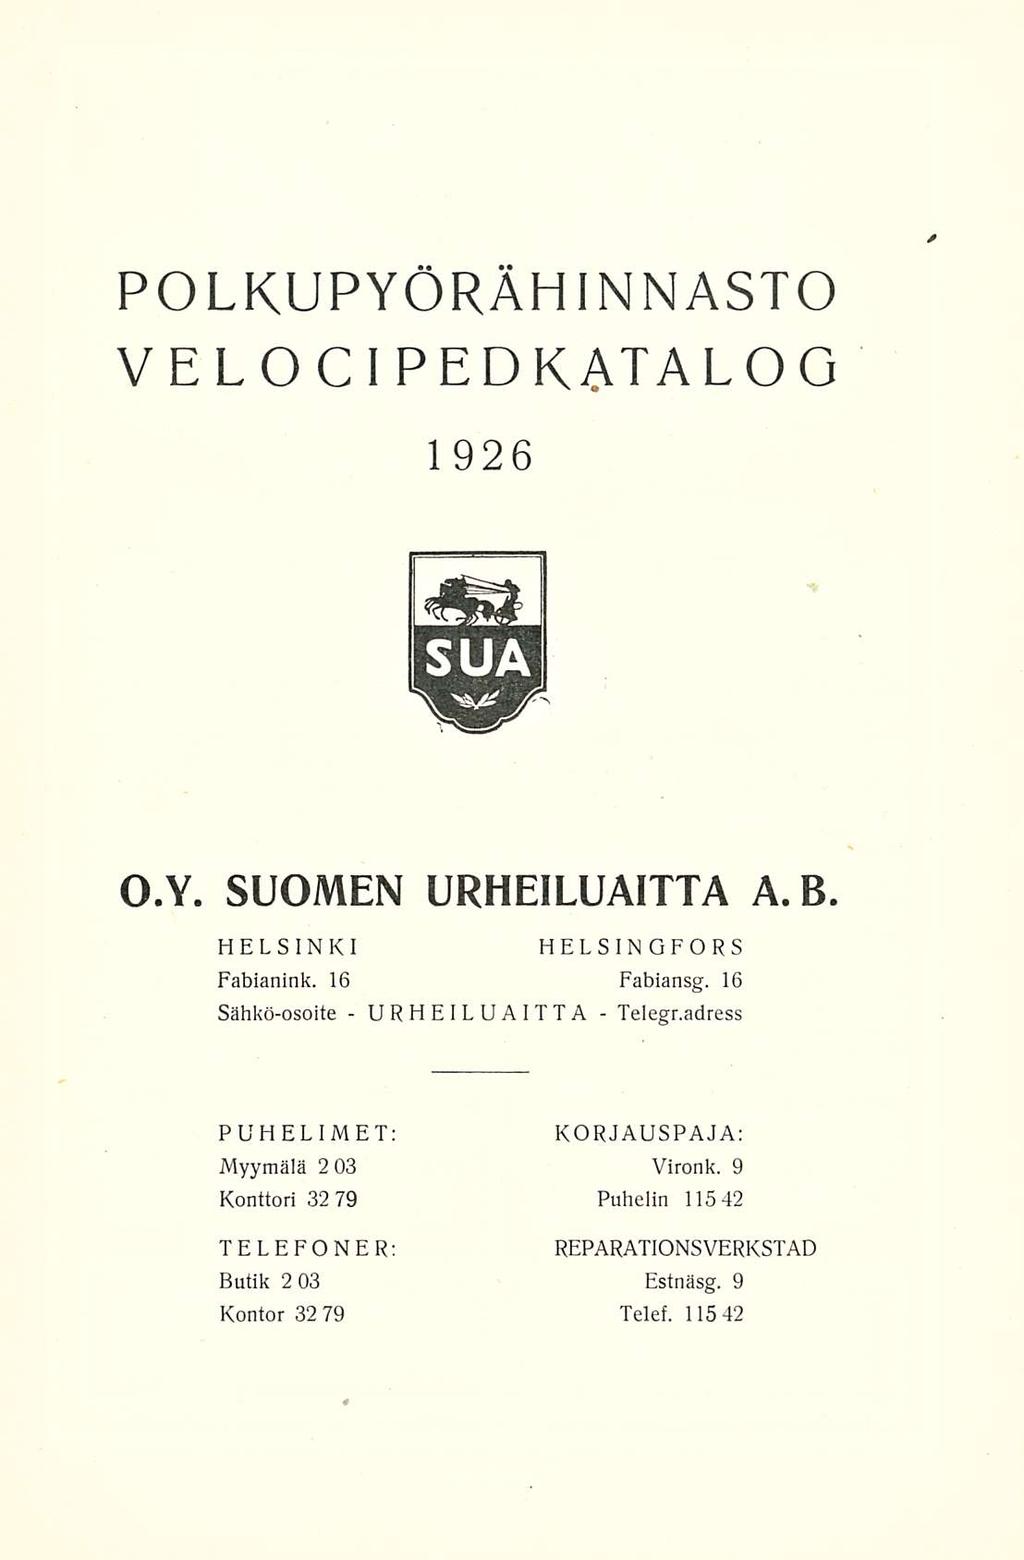 POLKUPYÖRÄHINNASTO VELOCI PEDKATALOG 1926 O.Y. SUOMEN URHEILUAITTA A.B. HELSINKI Fabianink. 16 Sähkö-osoite - HELSINGFORS Fabiansg. 16 - URHEILUAITTA Telegr.